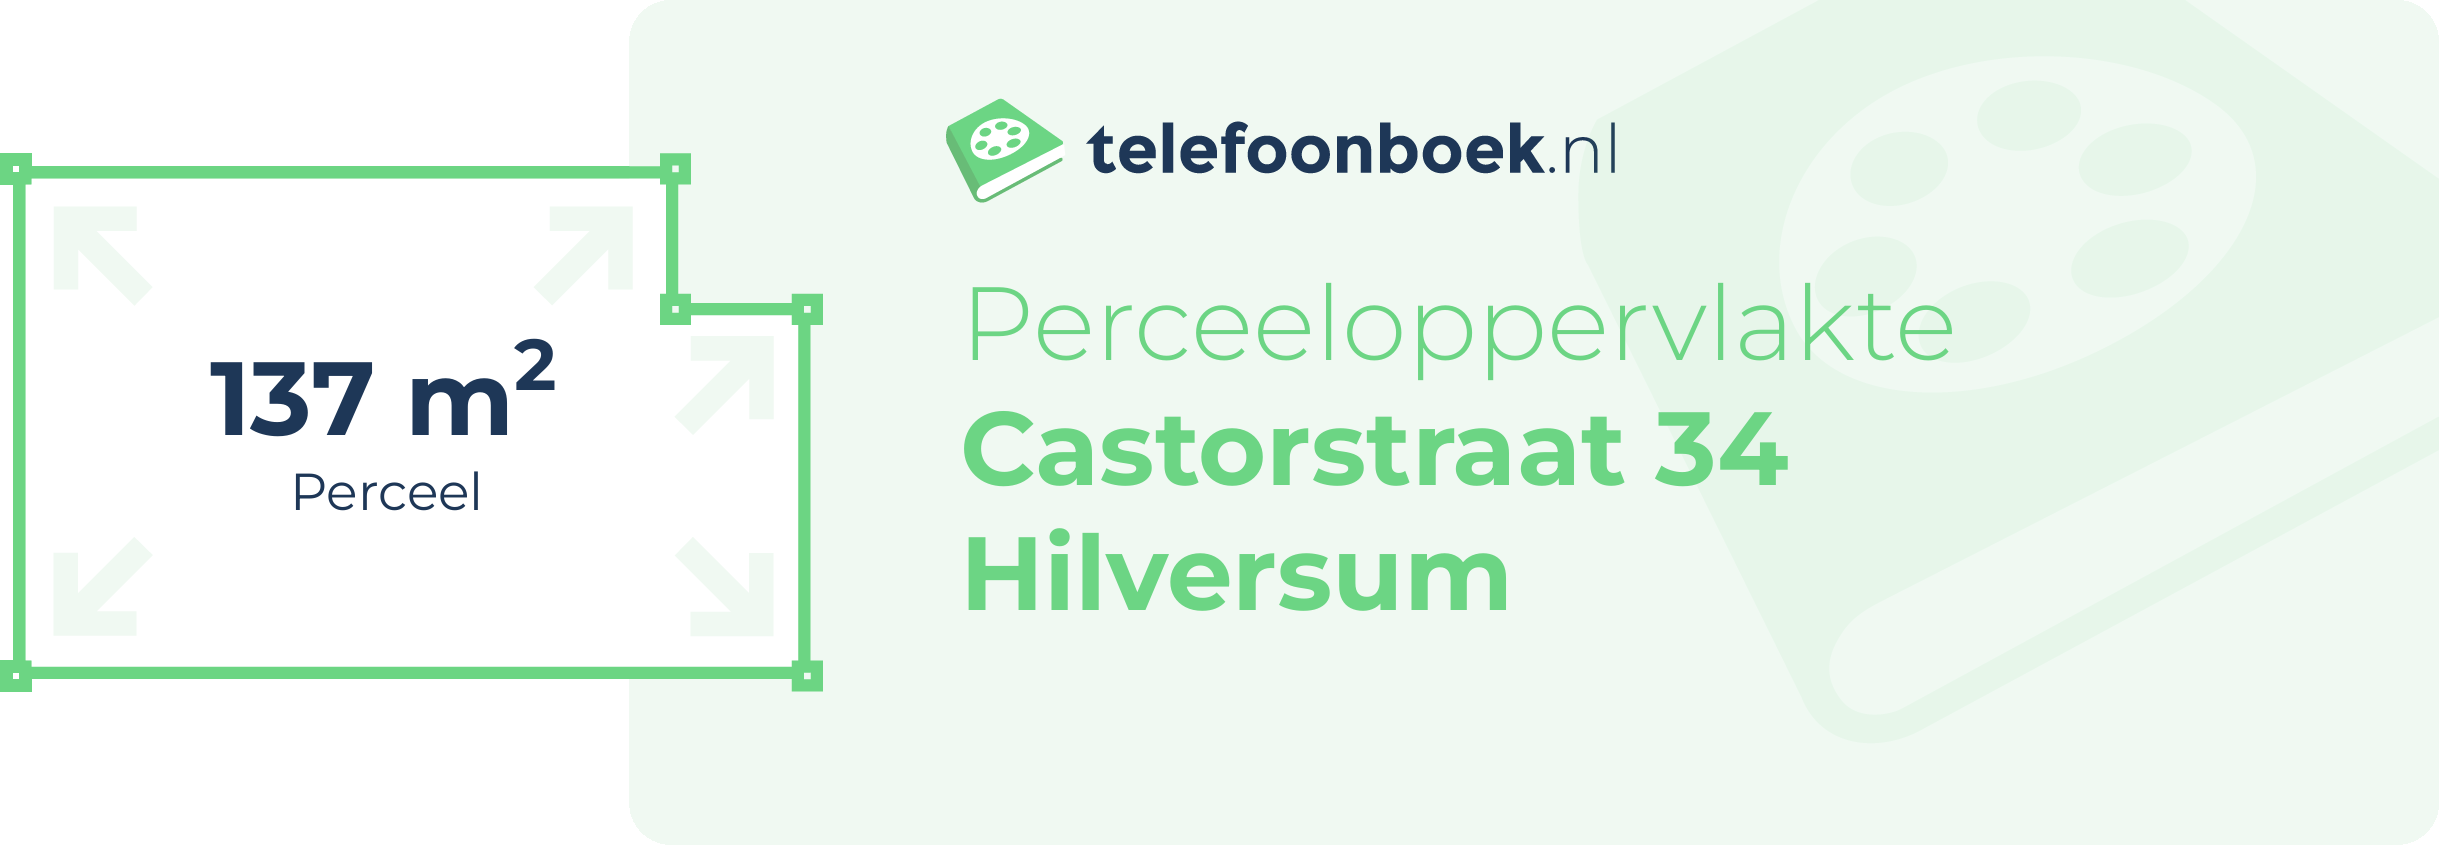 Perceeloppervlakte Castorstraat 34 Hilversum